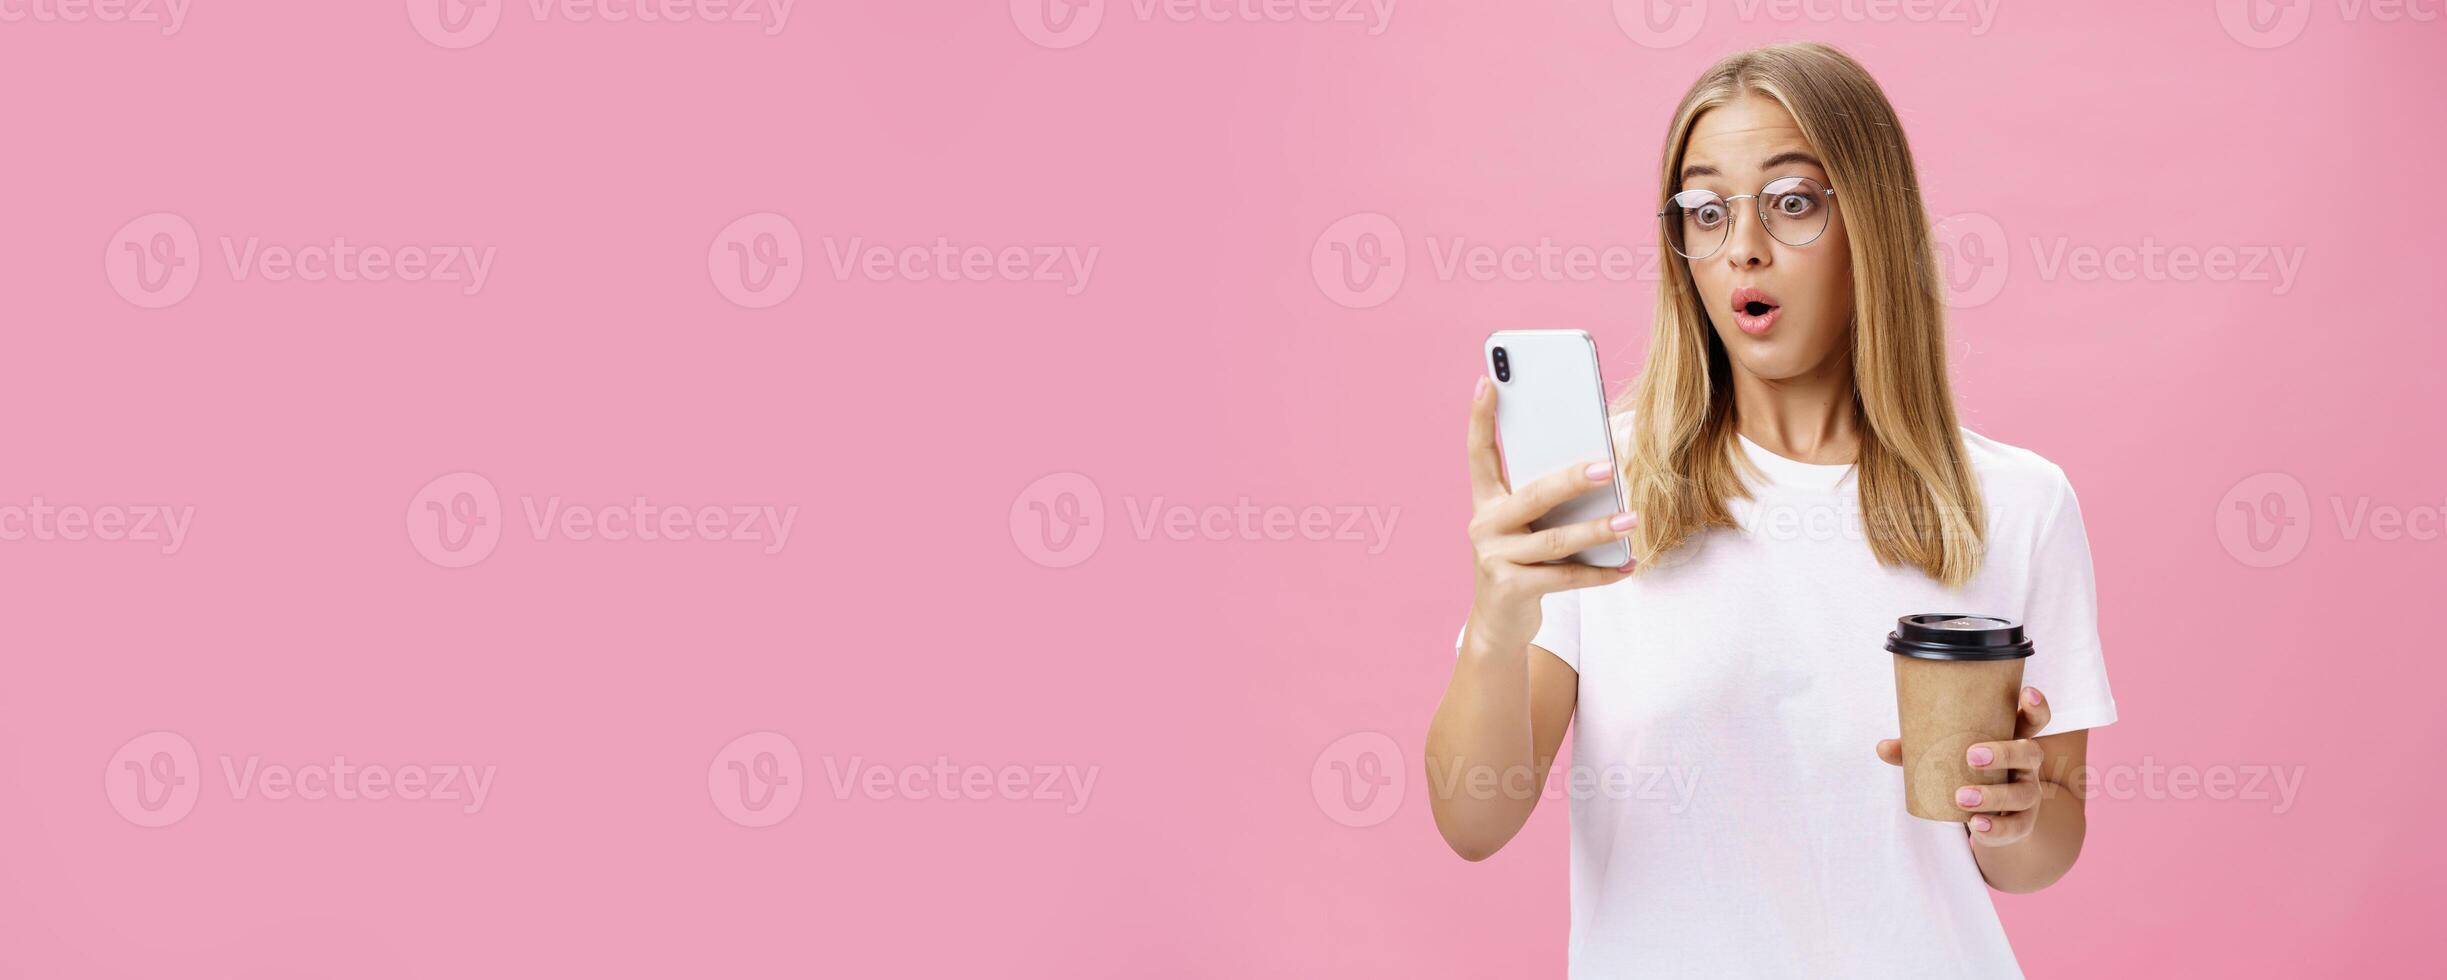 mujer Bebiendo café siendo conmocionado por recibido mensaje reaccionando en maravilloso Noticias plegable labios jadeando mirando asombrado y impresionado a teléfono inteligente pantalla participación papel taza, posando terminado rosado pared foto